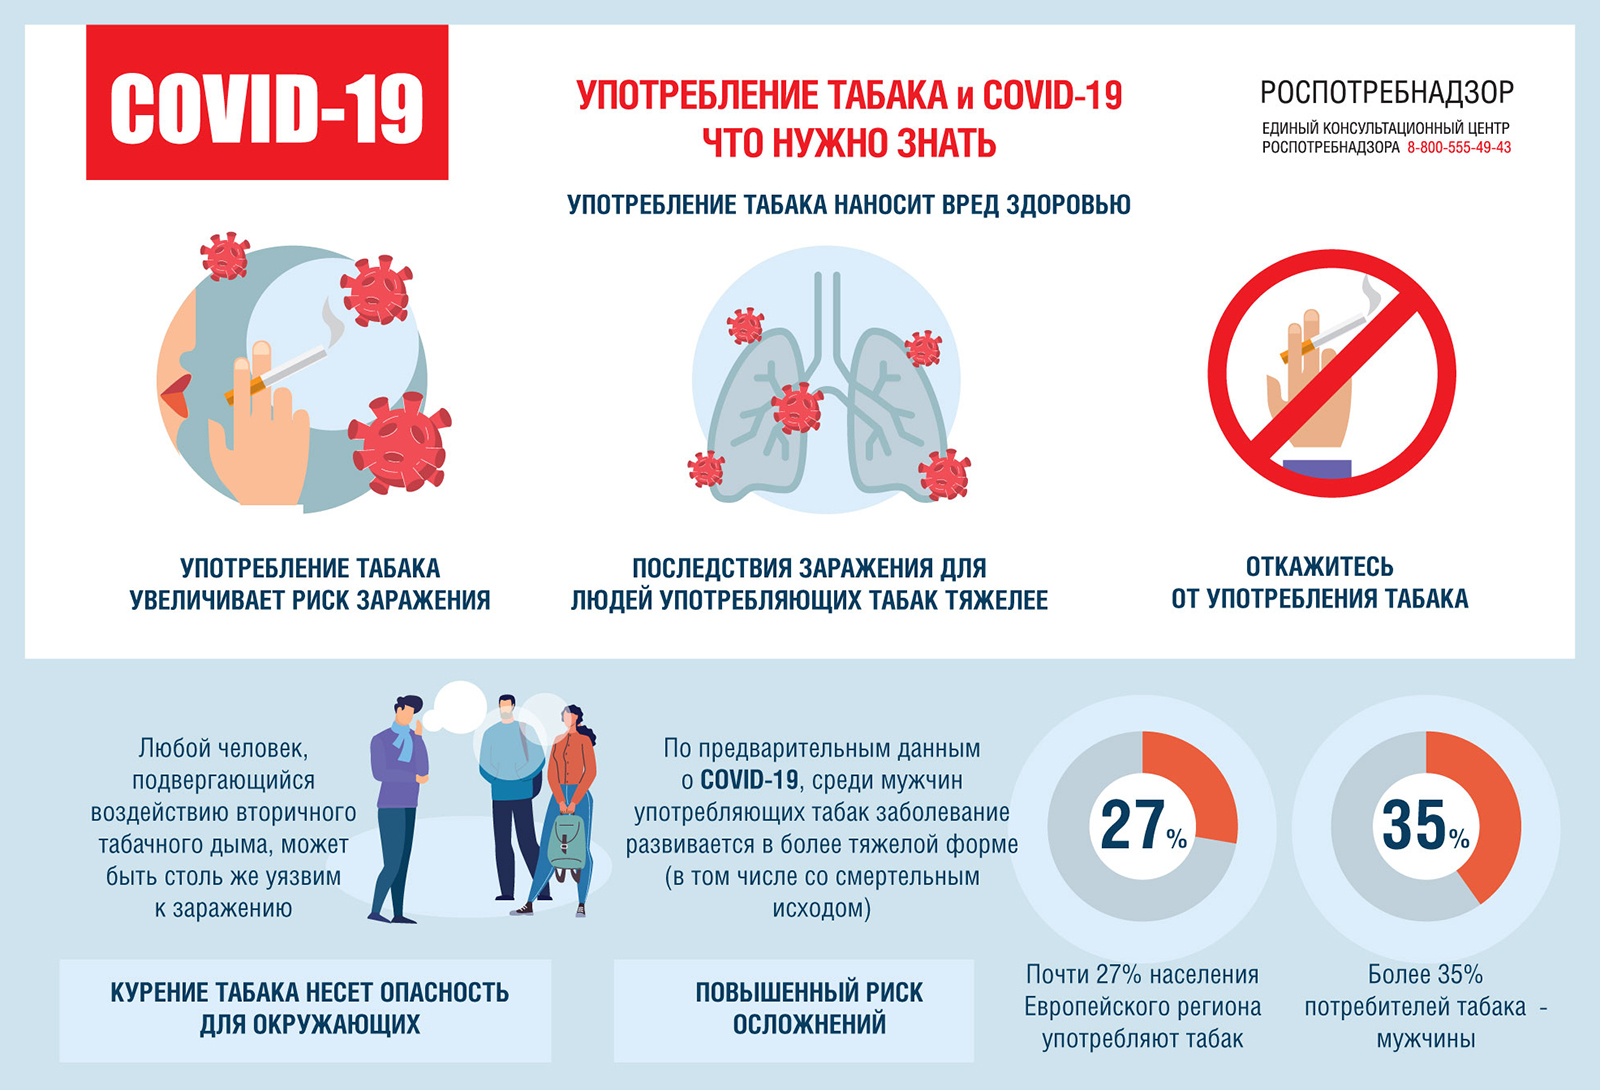 Об употреблении табака в период пандемии новой коронавирусной инфекции COVID-19